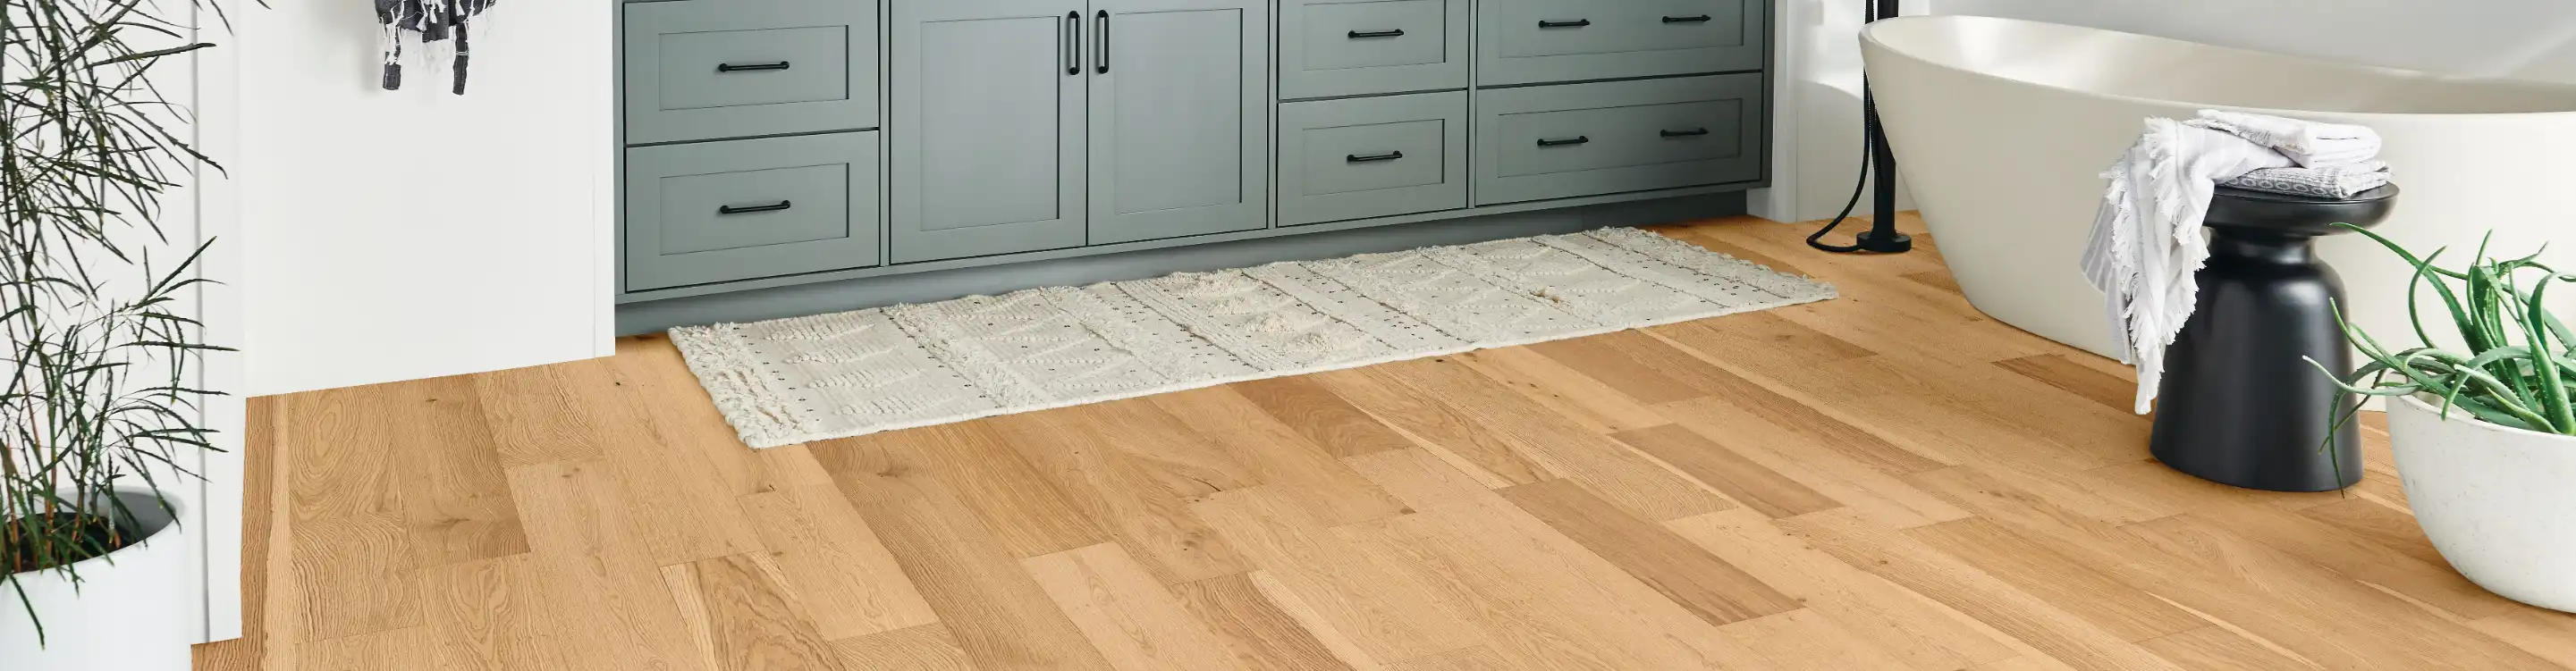 hardwood flooring in a bathroom